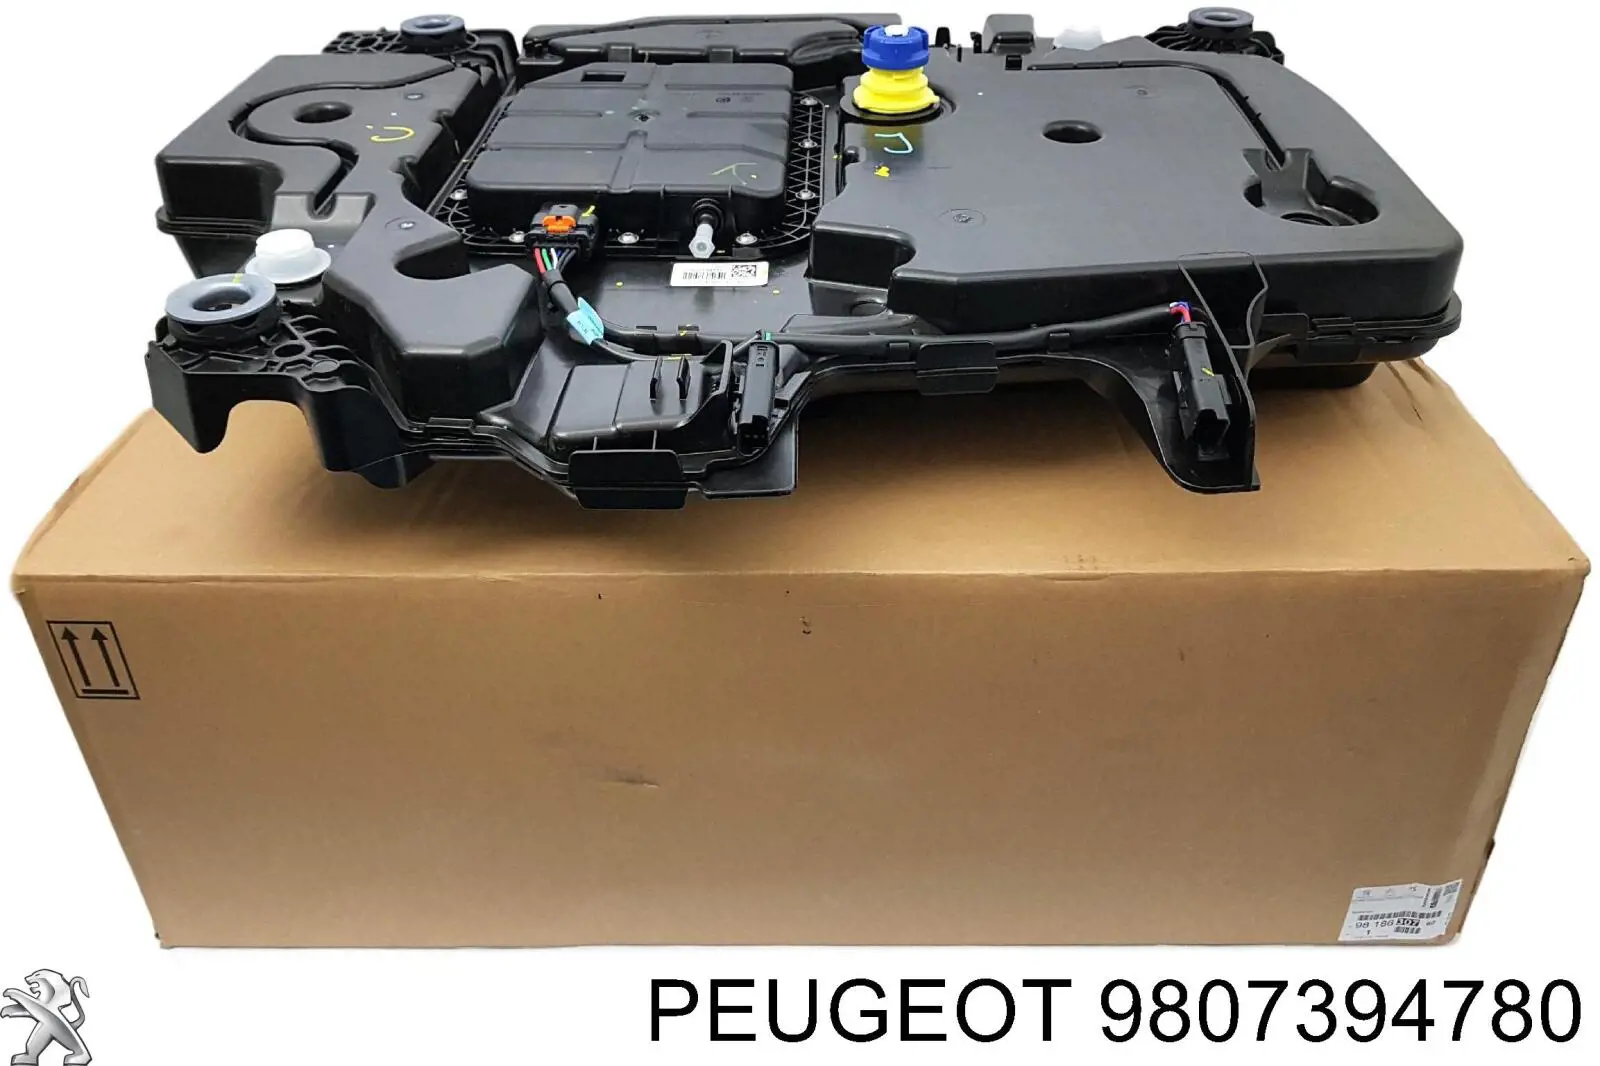 9807394780 Peugeot/Citroen depósito de adblue